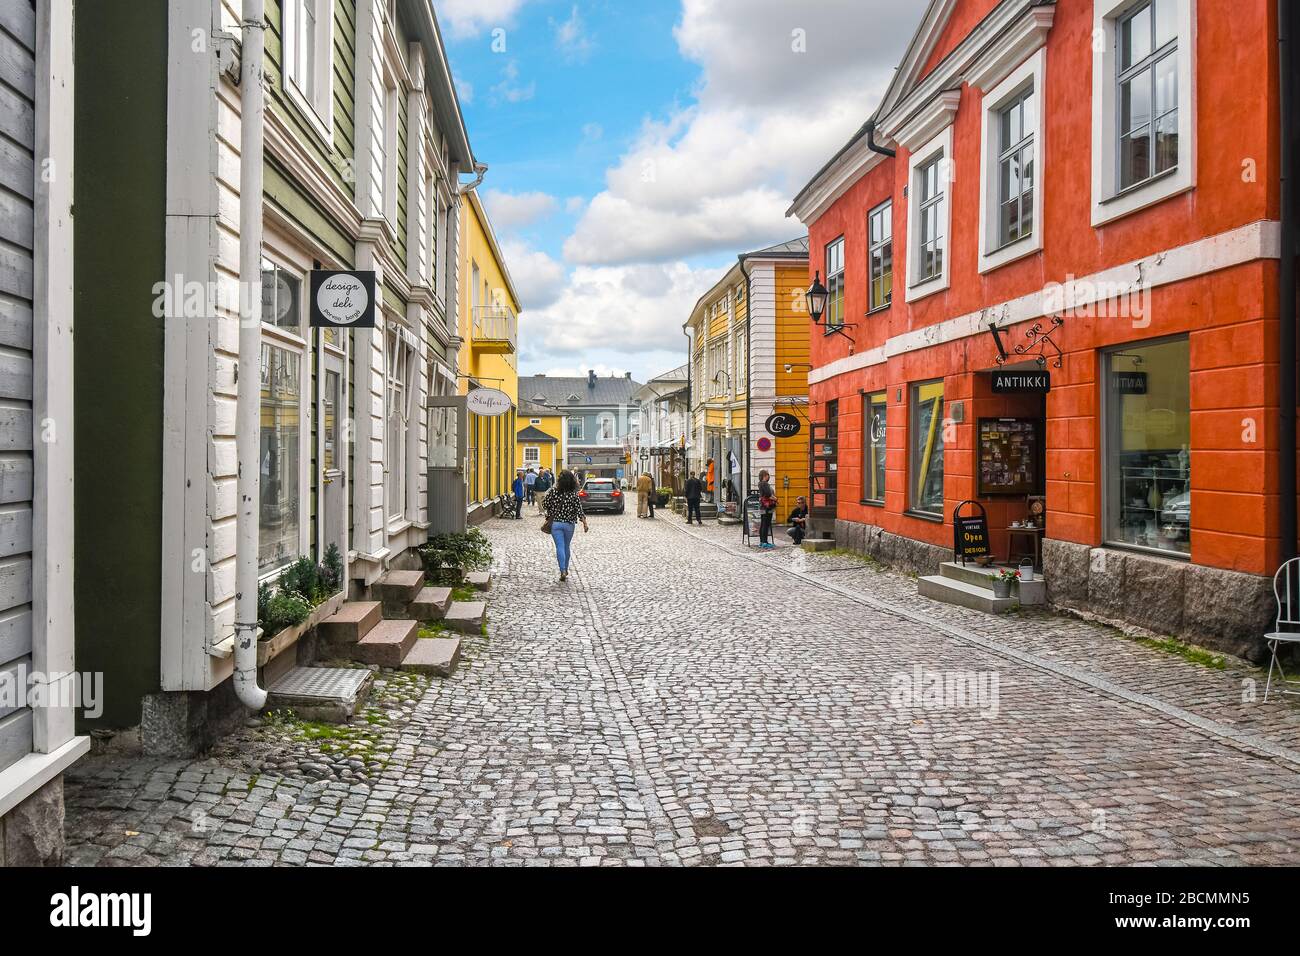 I turisti potranno visitare la città e fare shopping in una delle strade acciottolate della colorata città medievale di Porvoo, Finlandia. Foto Stock